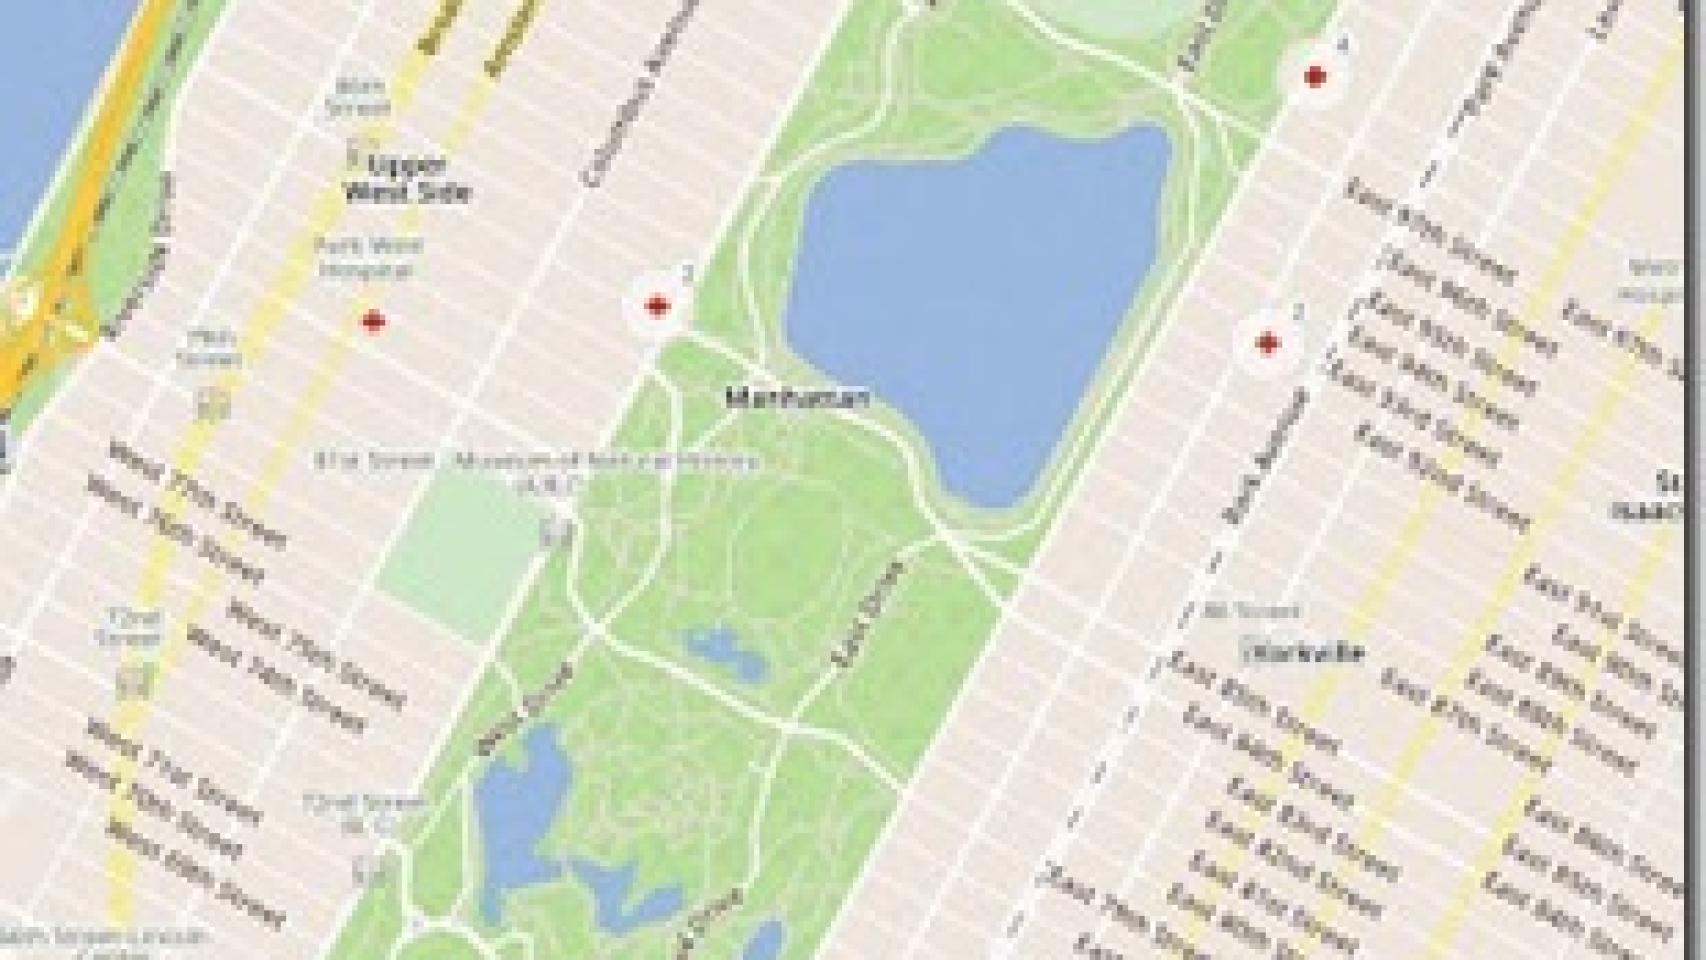 Skobbler lanza una aplicación de Mapas online/offline para demostrar el potencial de OpenStreetMaps